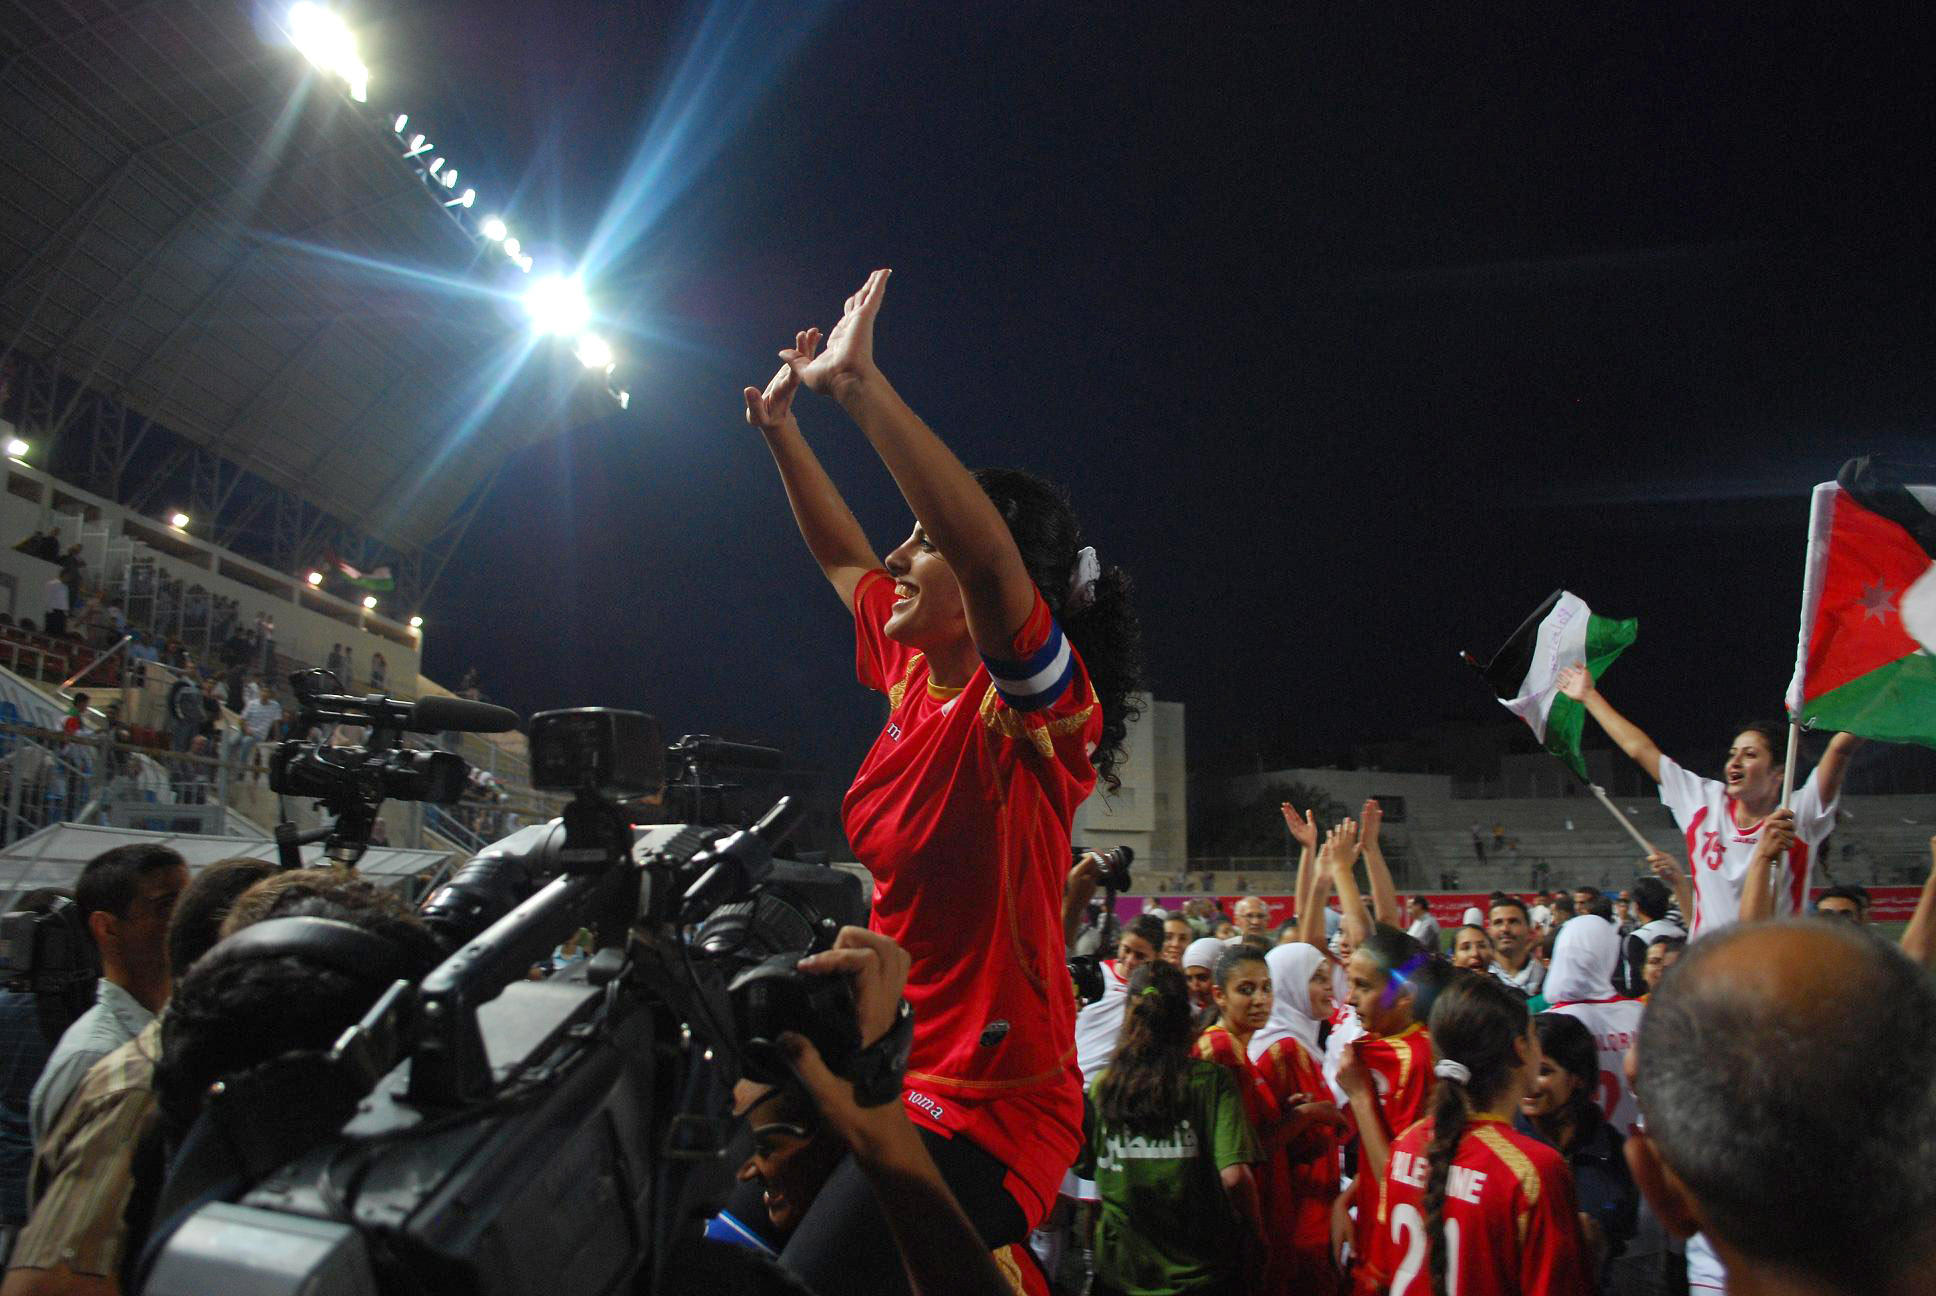 هني ثلجية خلال أول مباراة دولية للمنتخب الفلسطيني للسيدات مع المنتخب الأردني في عام 2009.